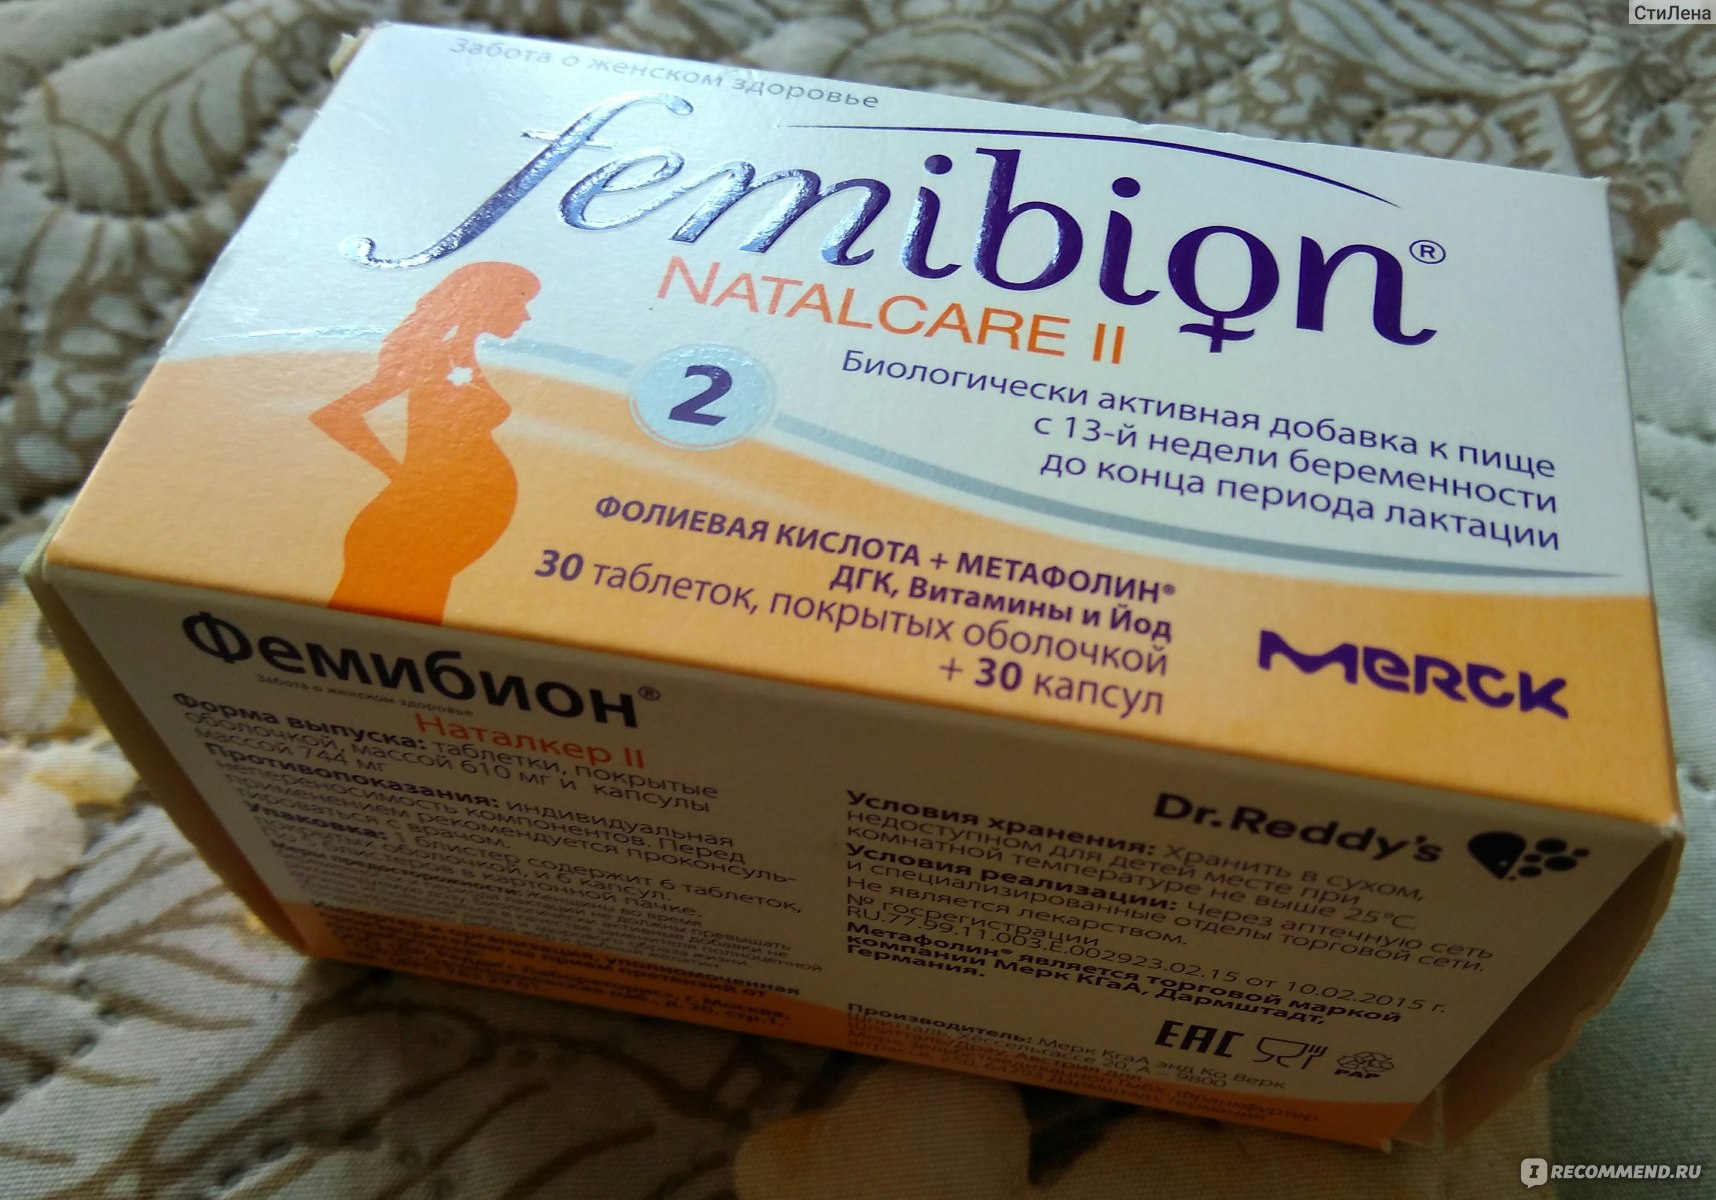 Фемибион 1 Аптека Столички